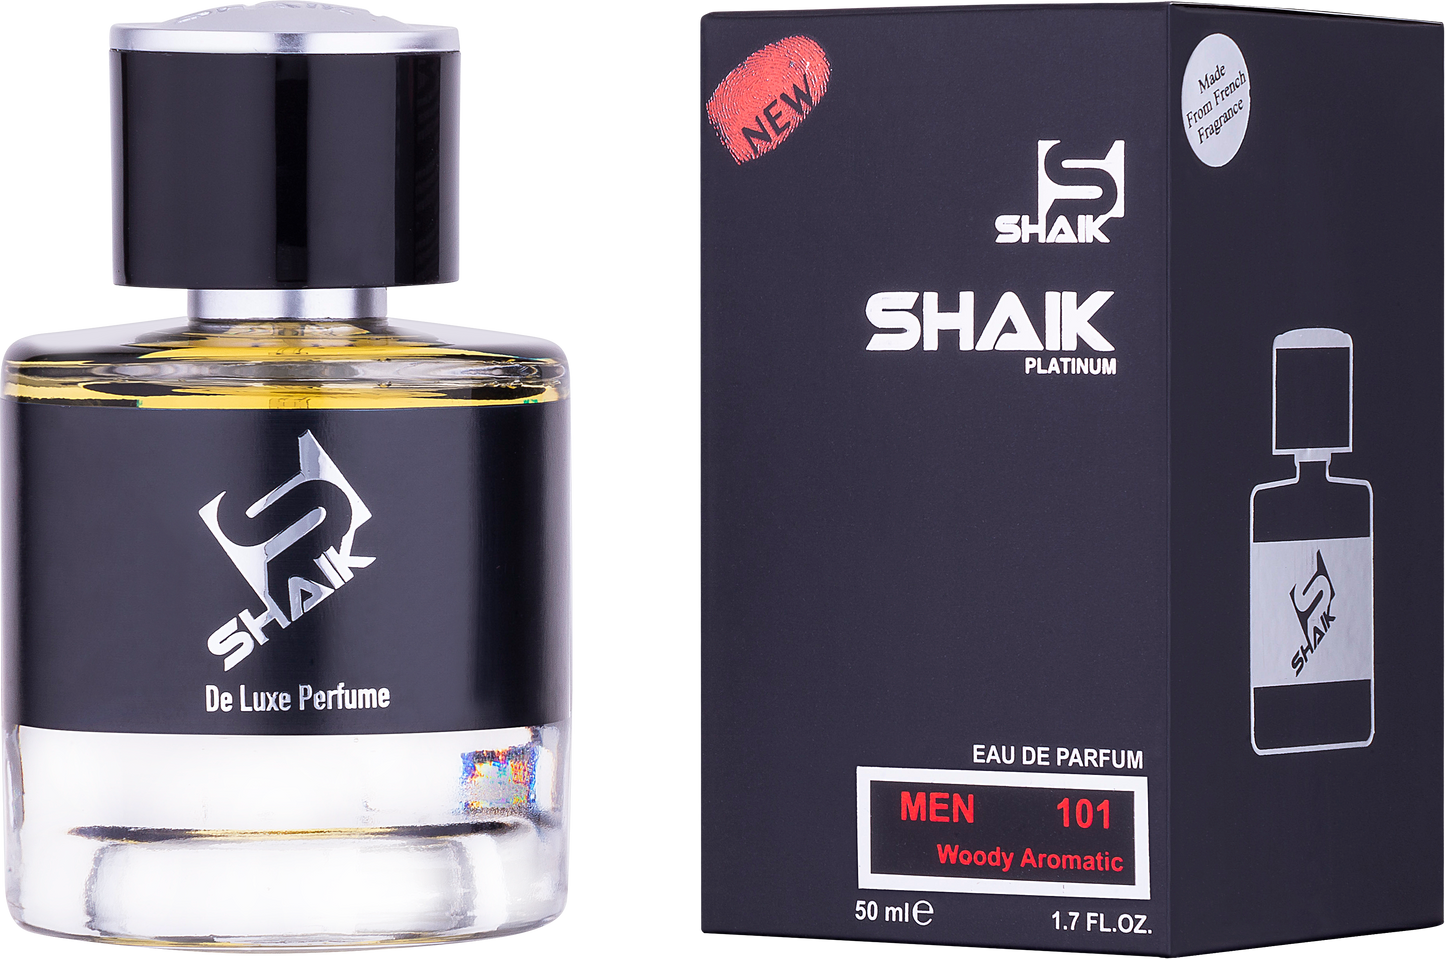 Shaik - 111 - Rosemary, Tuberose, Suede - Shaik Perfume